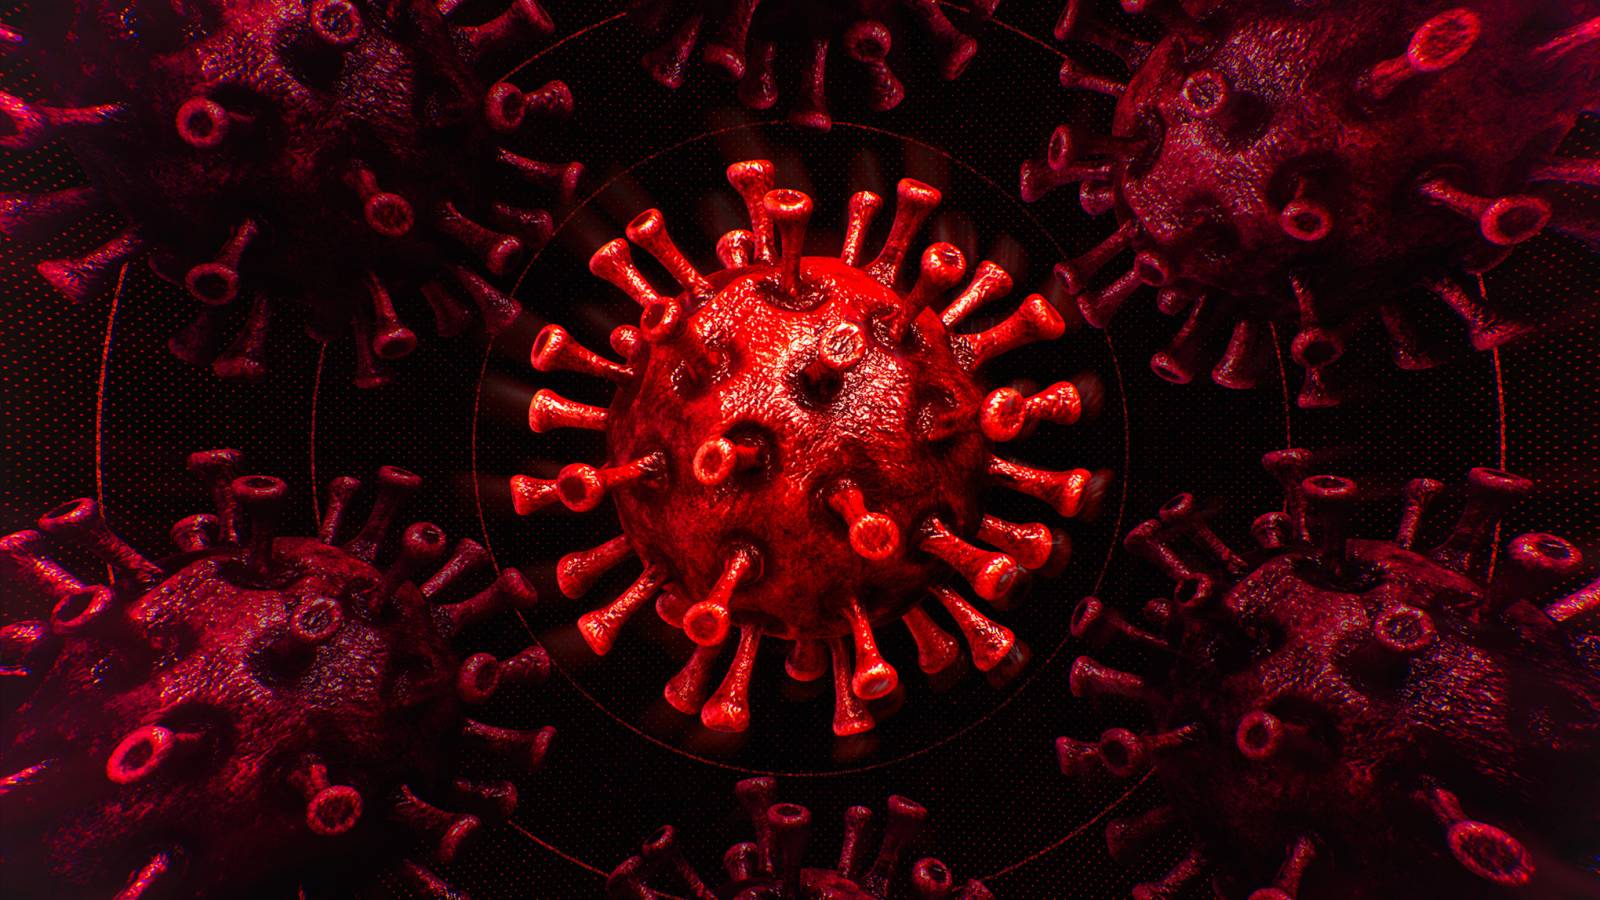 Koronavirus Romaniassa uusien tapausten valtava kasvu 1. lokakuuta 2021. Koronavirus Romanian uusien tapausten määrä 1. lokakuuta 2021